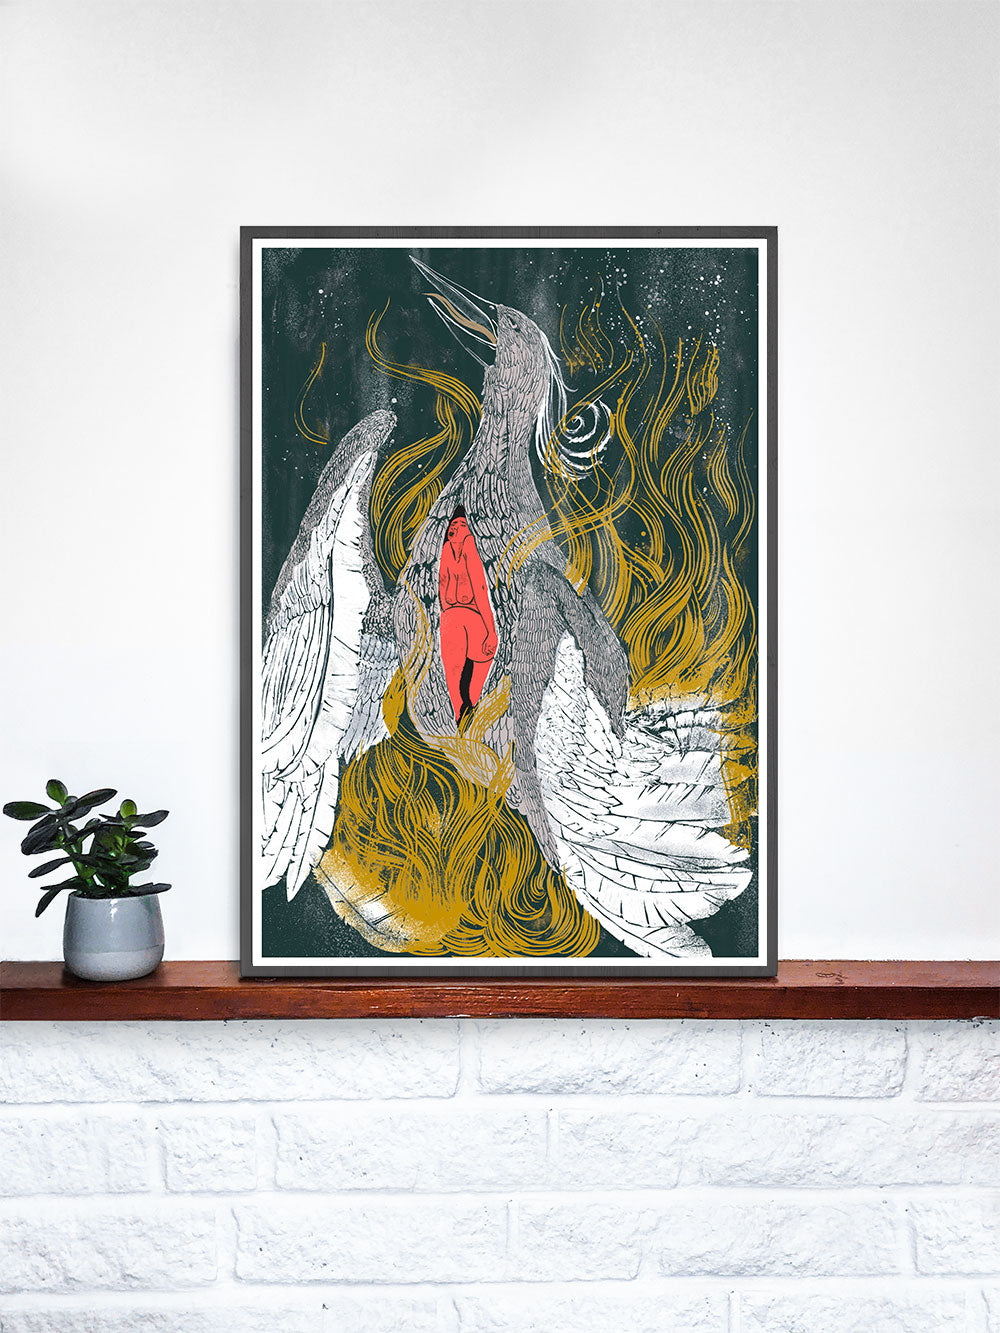 Phoenix Digital Art in a frame on a shelf